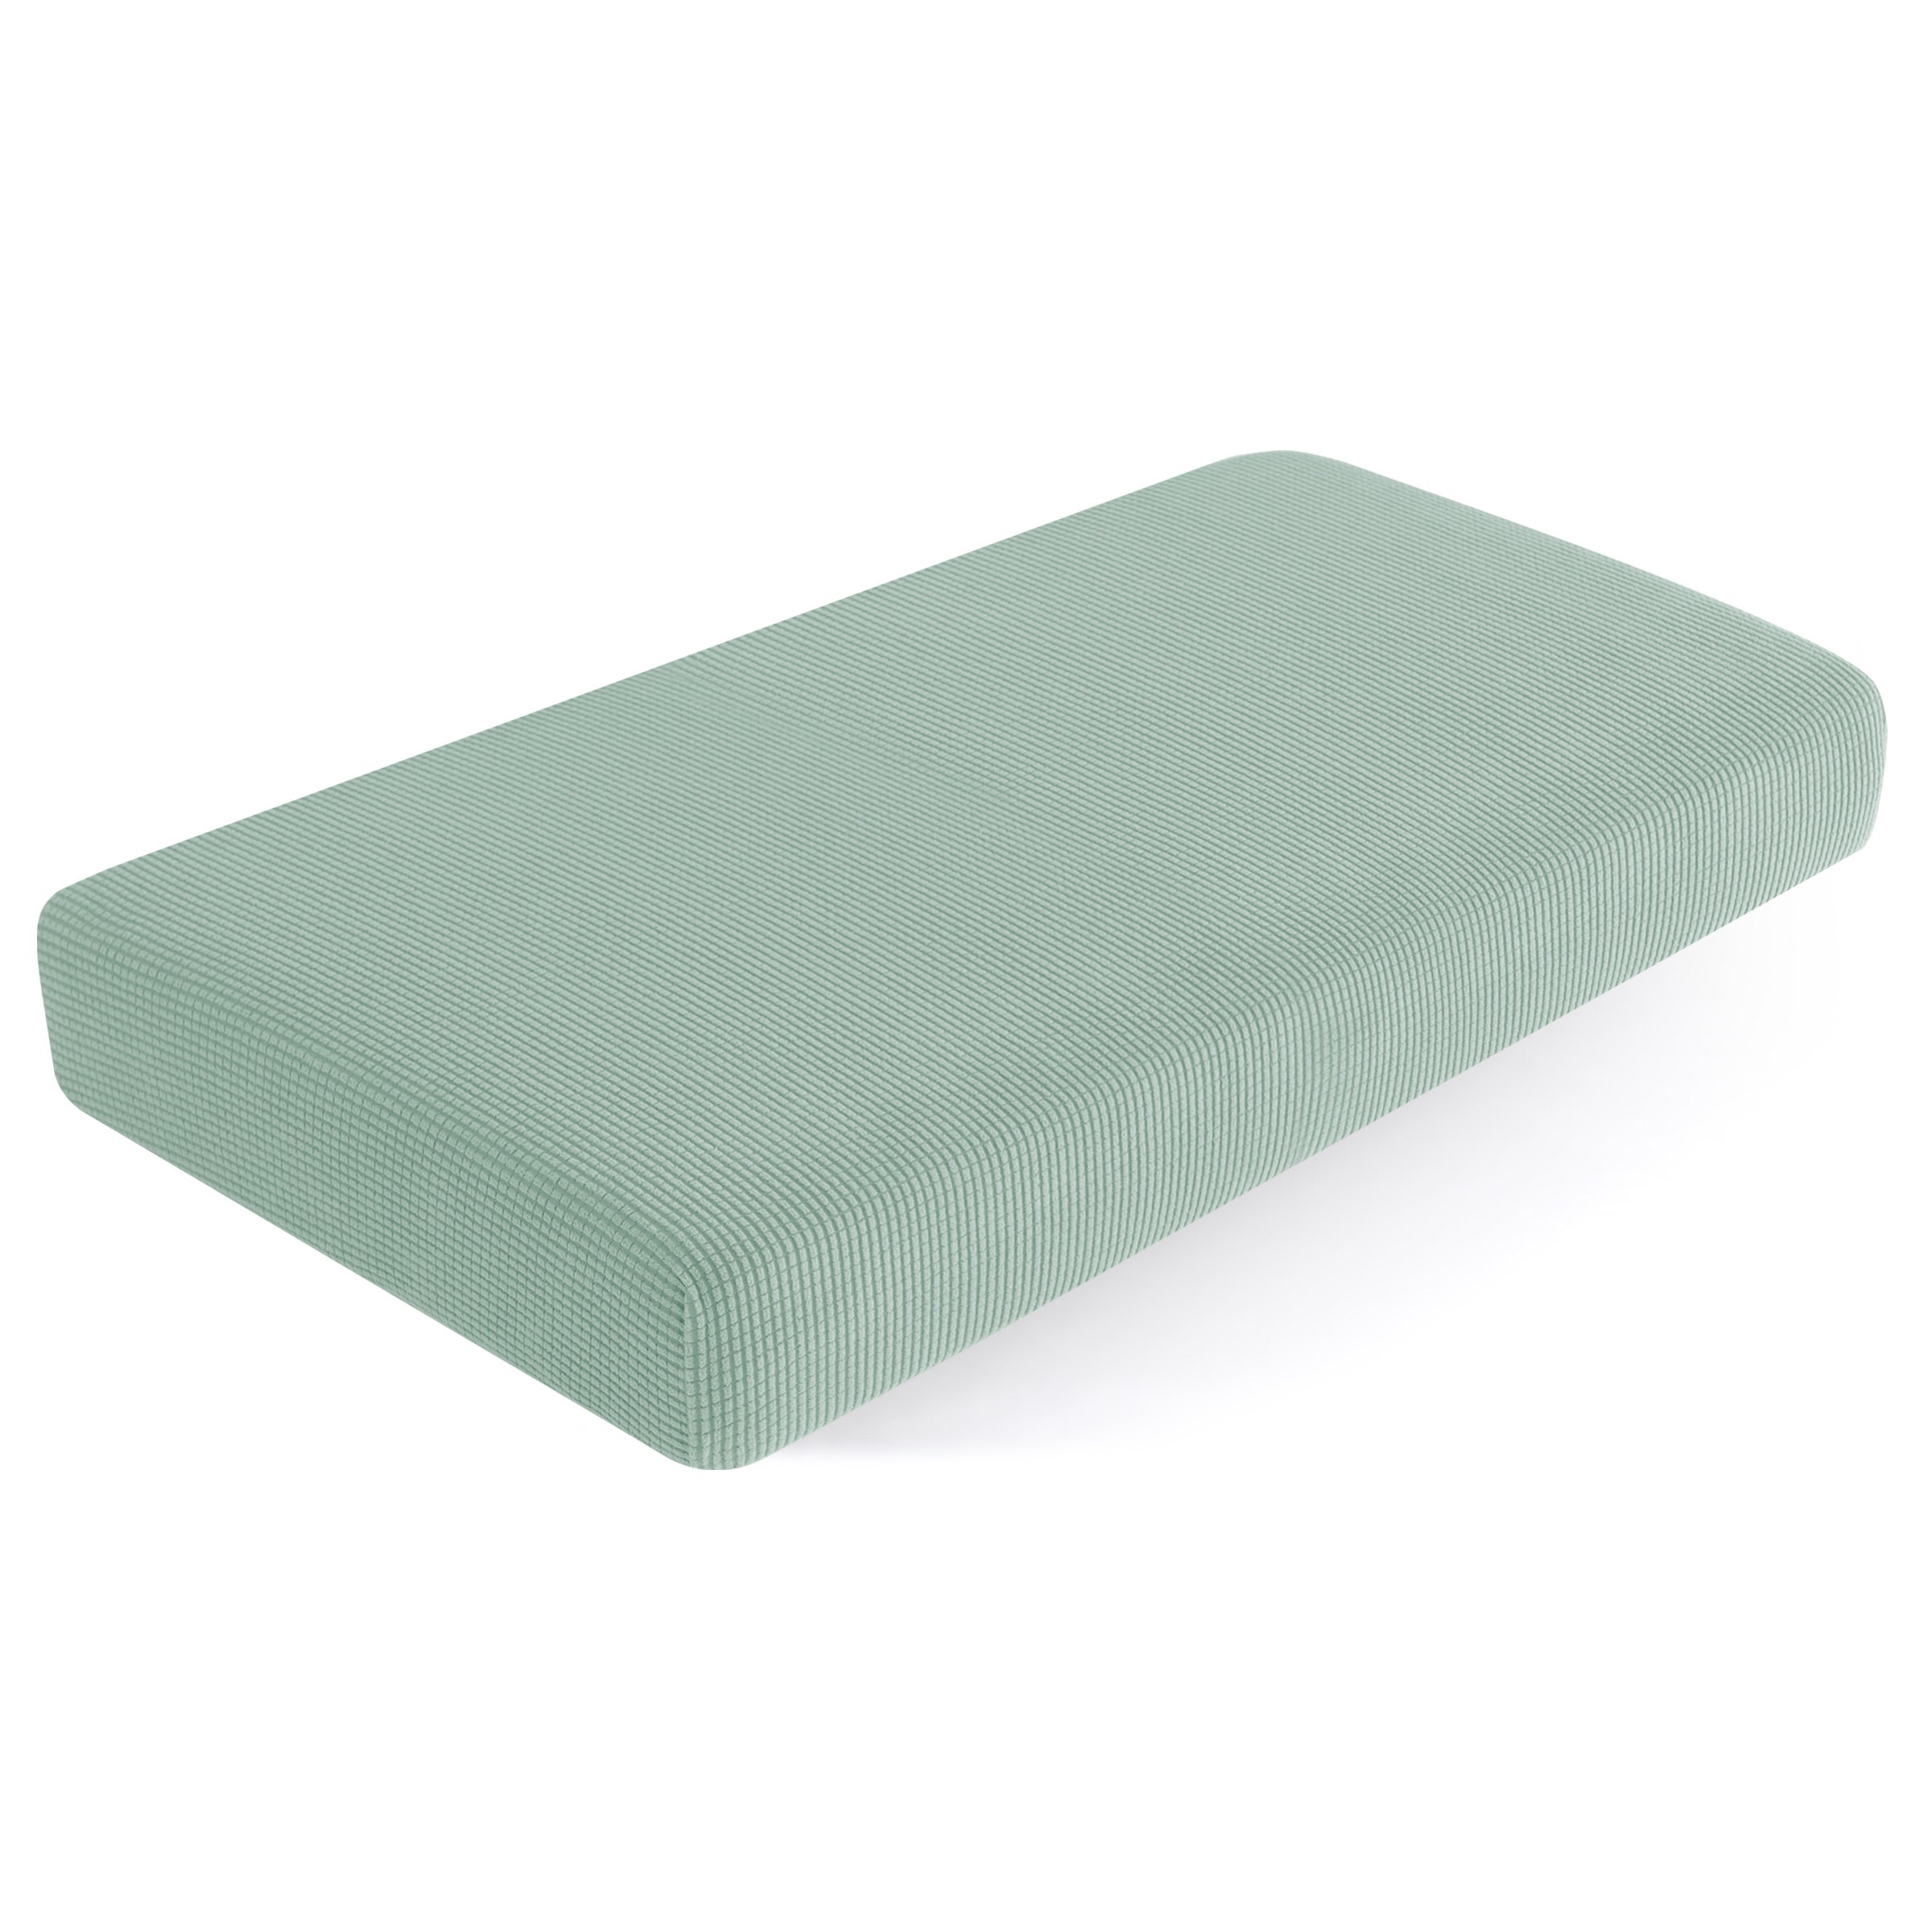 Ivor Plaid Stretch Sofa Cushion Cover